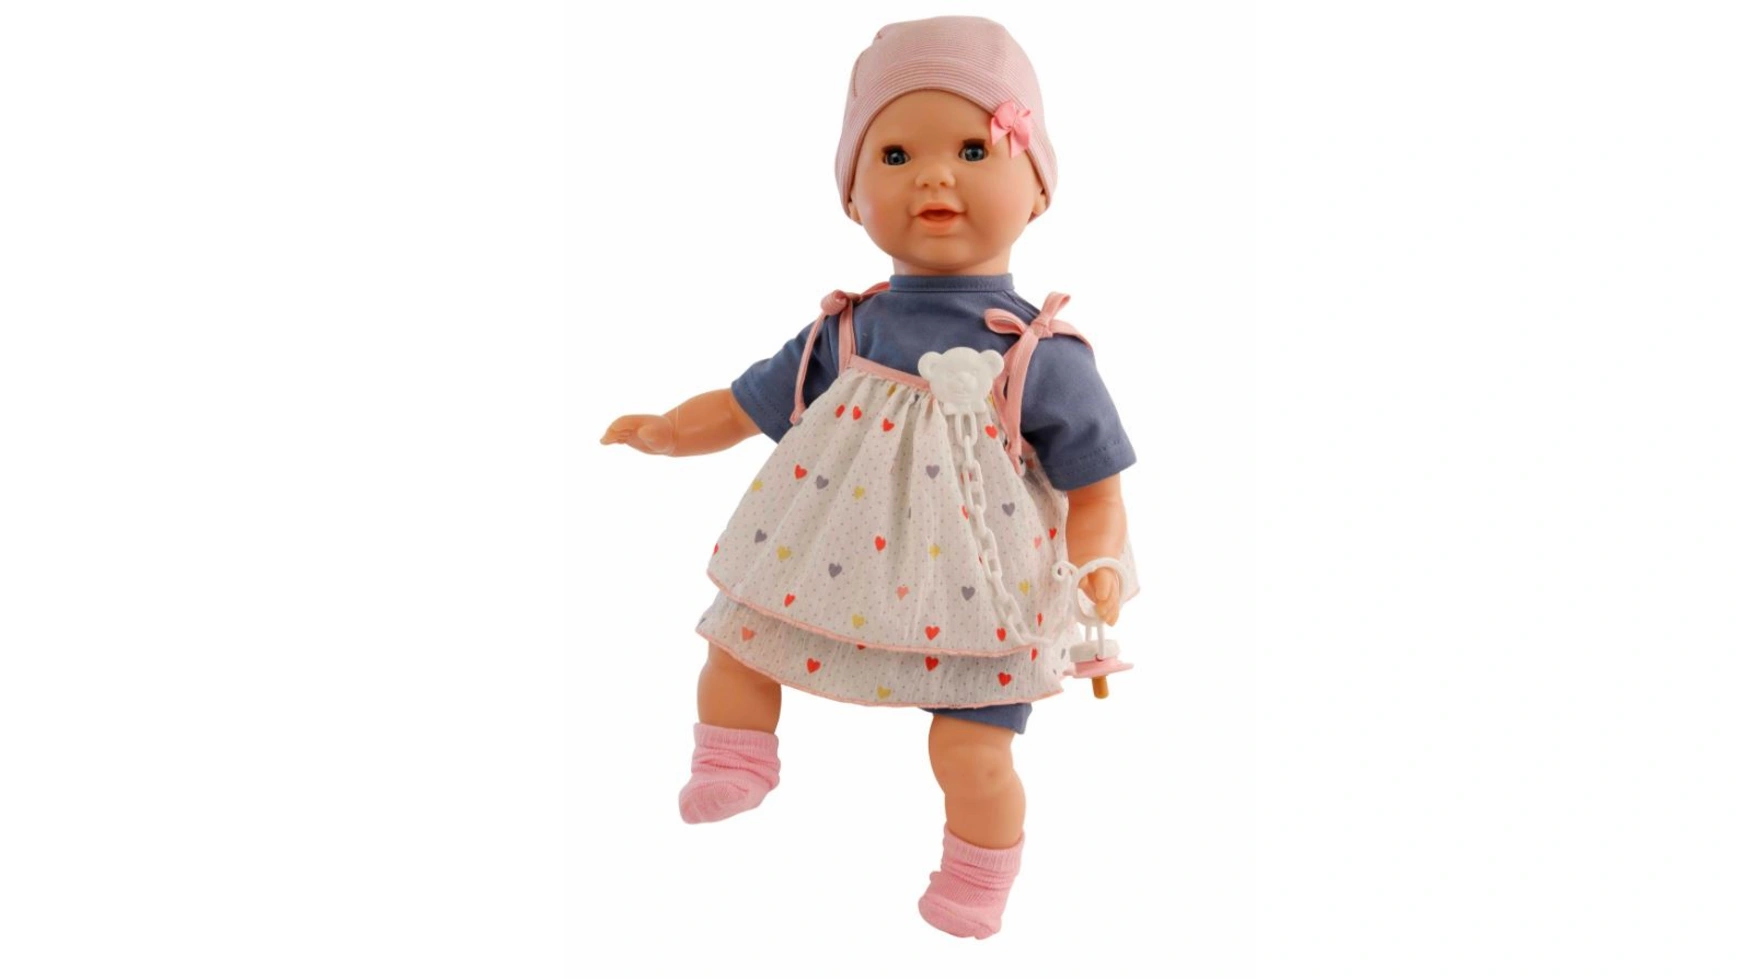 Schildkroet-Puppen Соска-пустышка baby Lenchen 37 см, роспись волос, голубые спящие глаза, одежда синий/белый/розовый